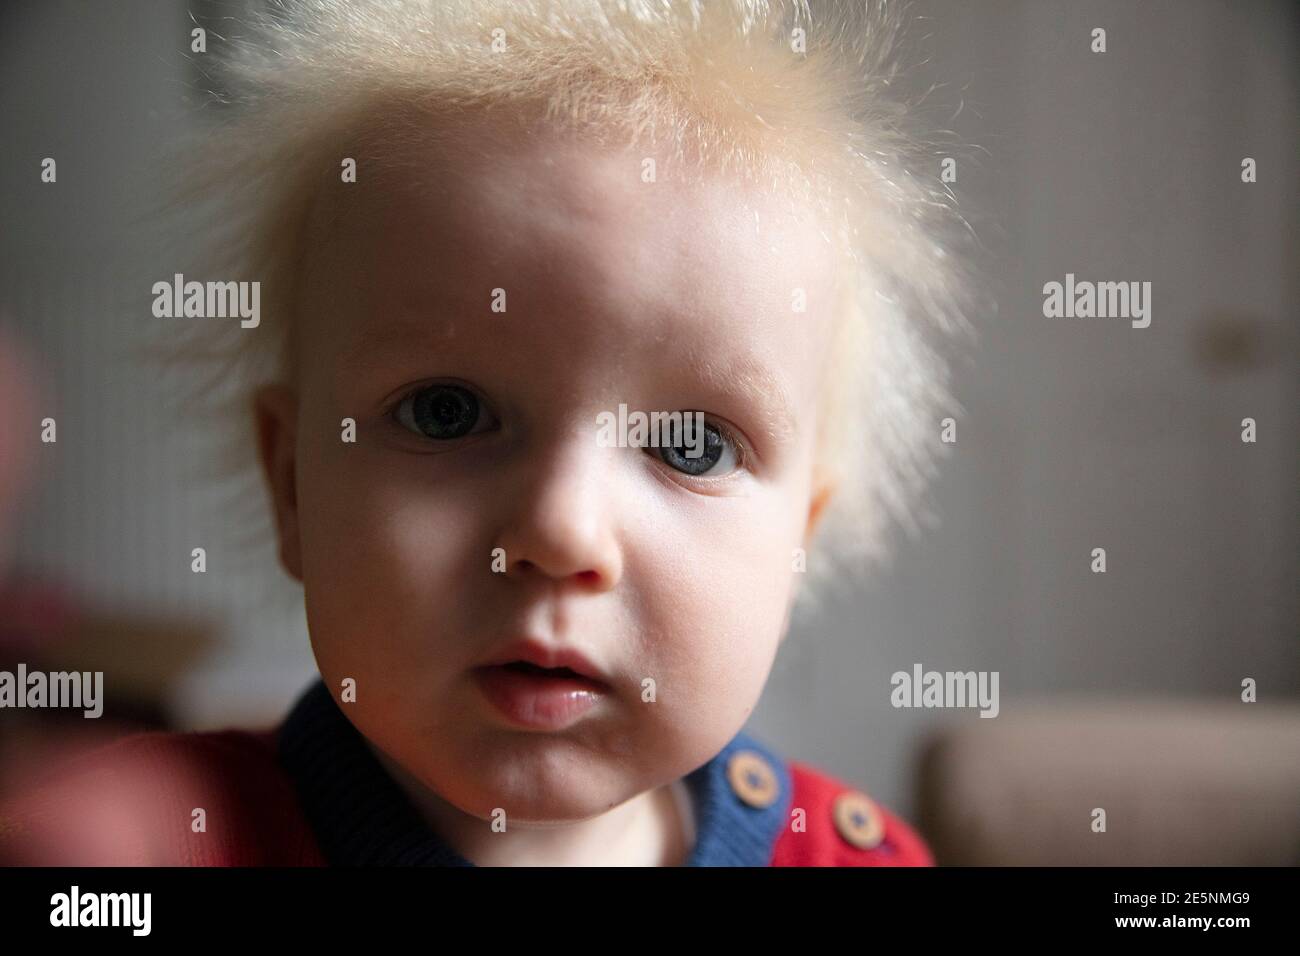 Primo piano di un bambino che guarda direttamente a. fotocamera con grandi occhi blu Foto Stock